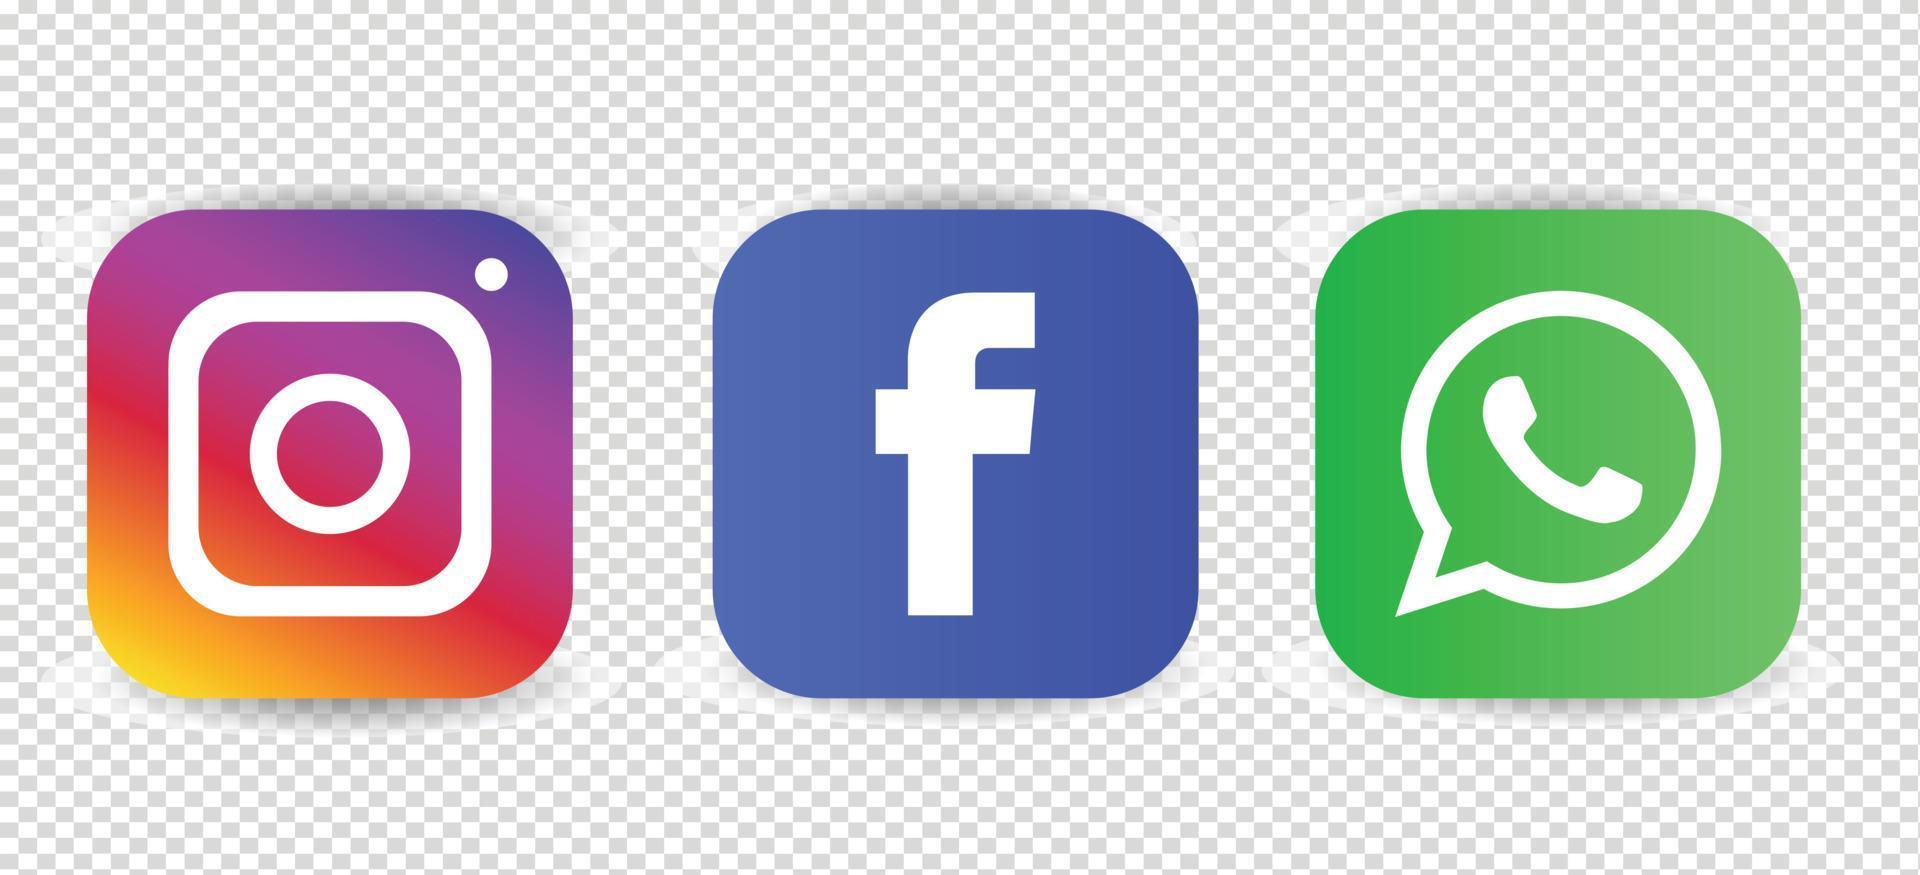 logotipos de instagram de facebook de redes sociales, conjunto de iconos de redes sociales en blanco y negro vector